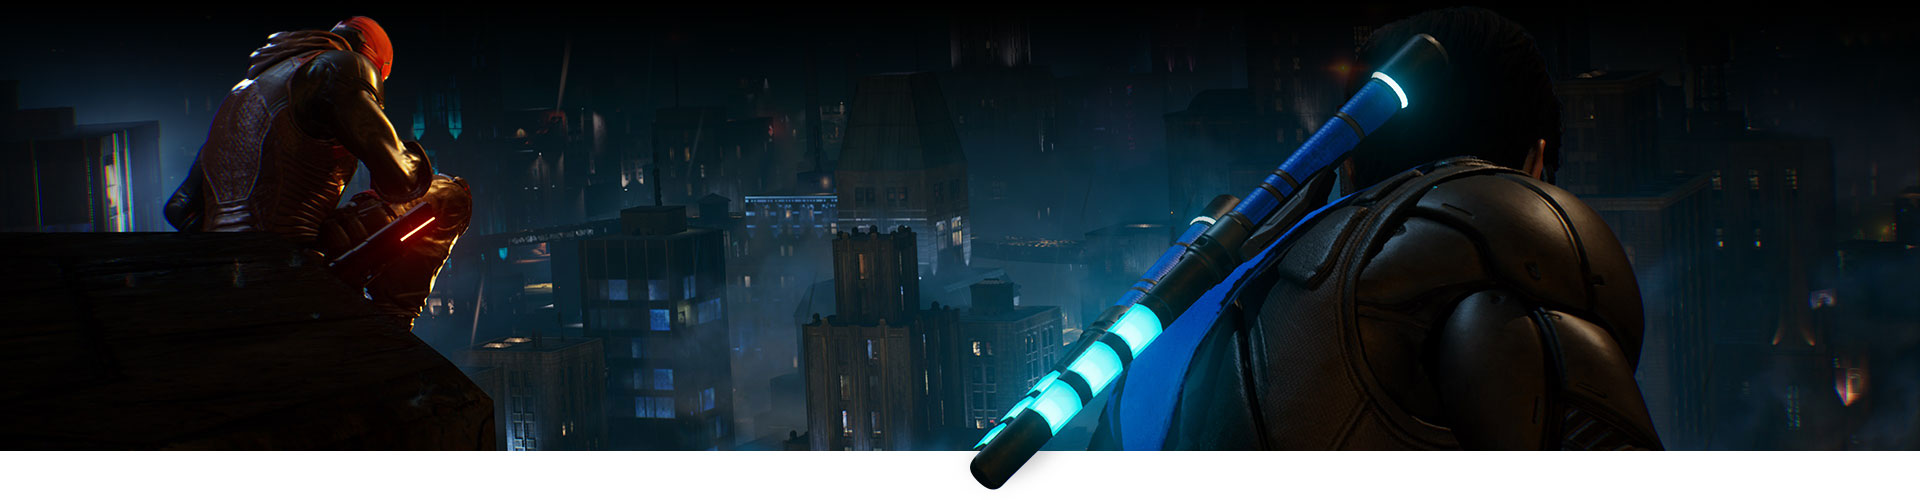 Red Hood och Nightwing sitter på ett tak och ser ut över staden.